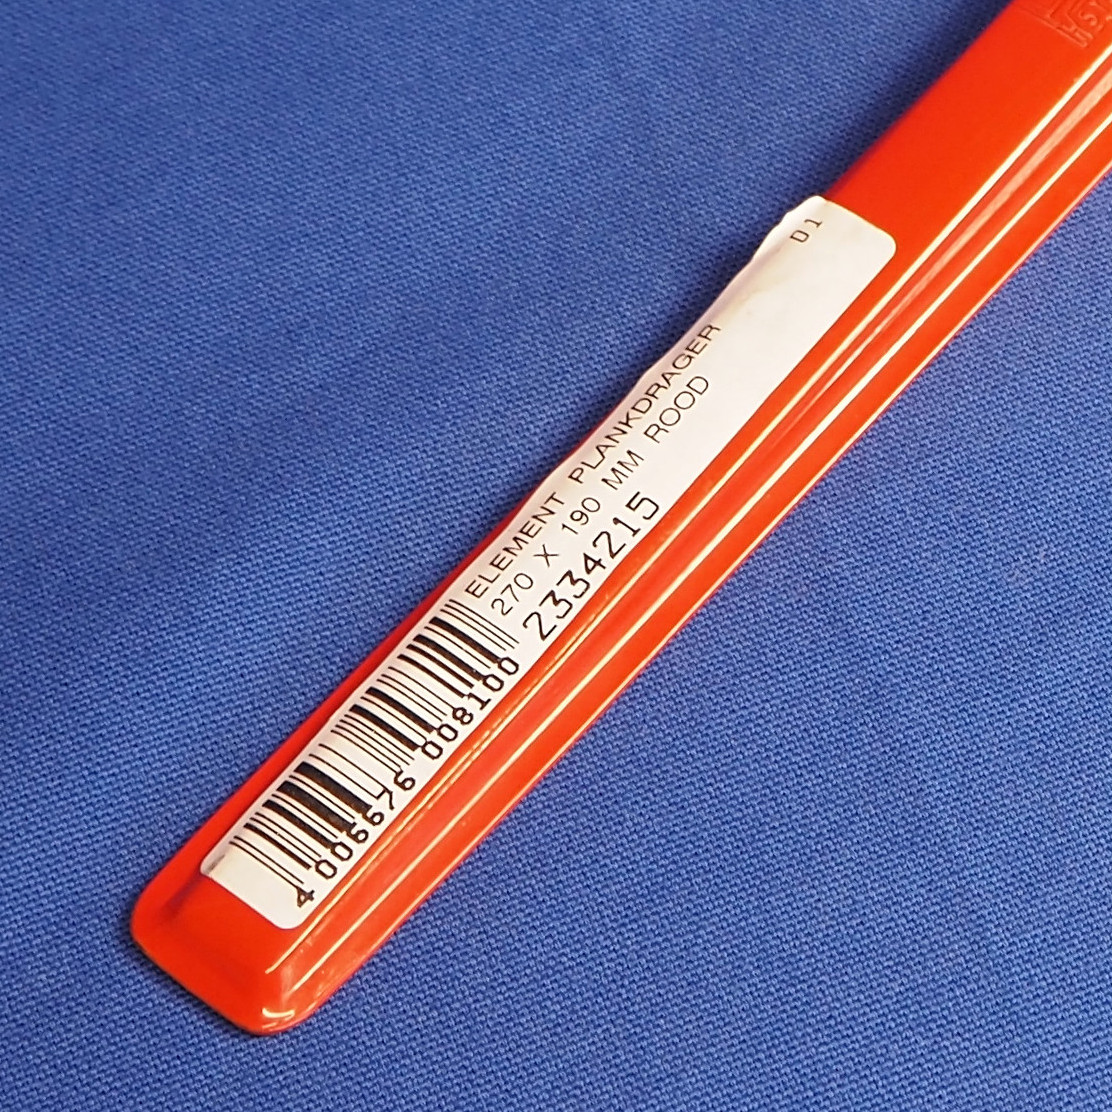 Shelf bracket (27 x 19 cm)